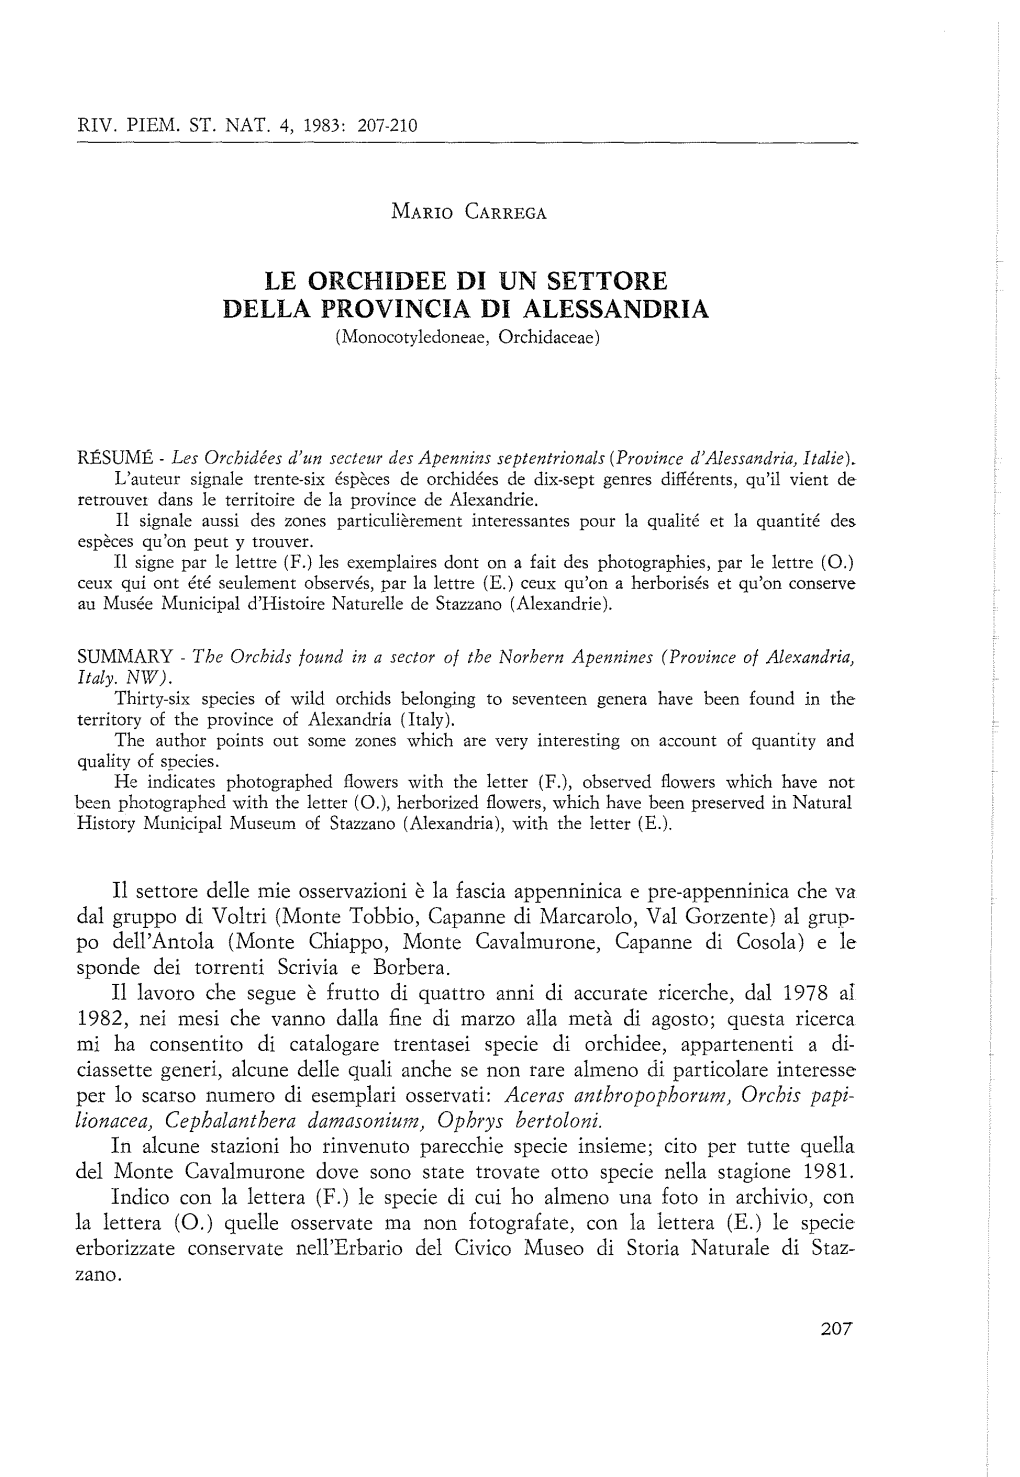 04 1983 Carrega Le Orchidee Di Un Settore Della Provincia Di Alessandria 207-210